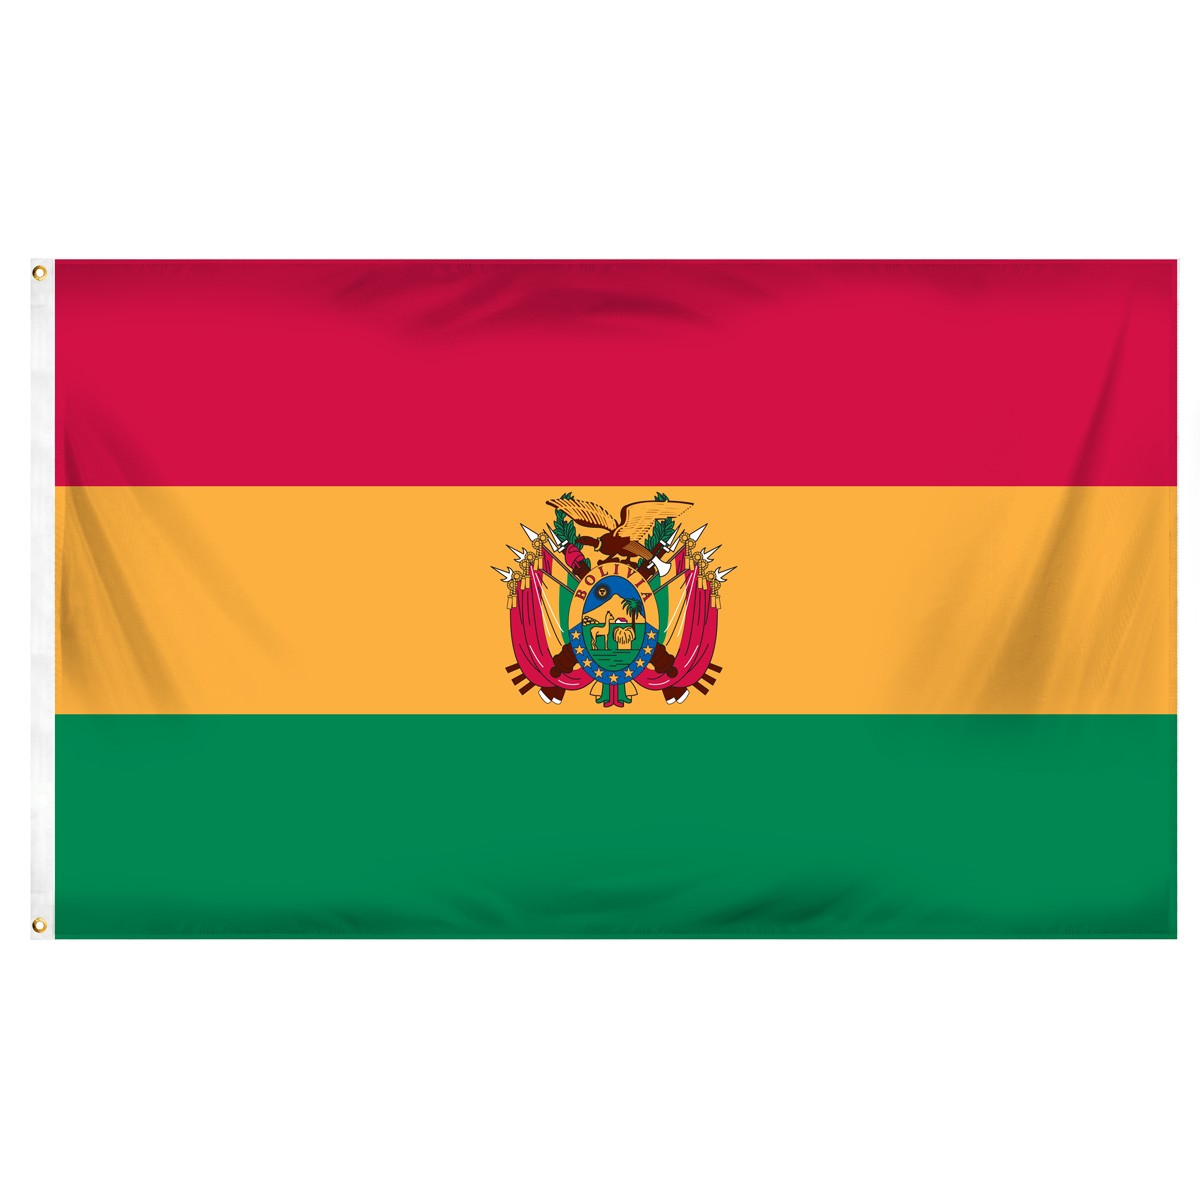 Bolivia Beach Flag and Sailing Flag